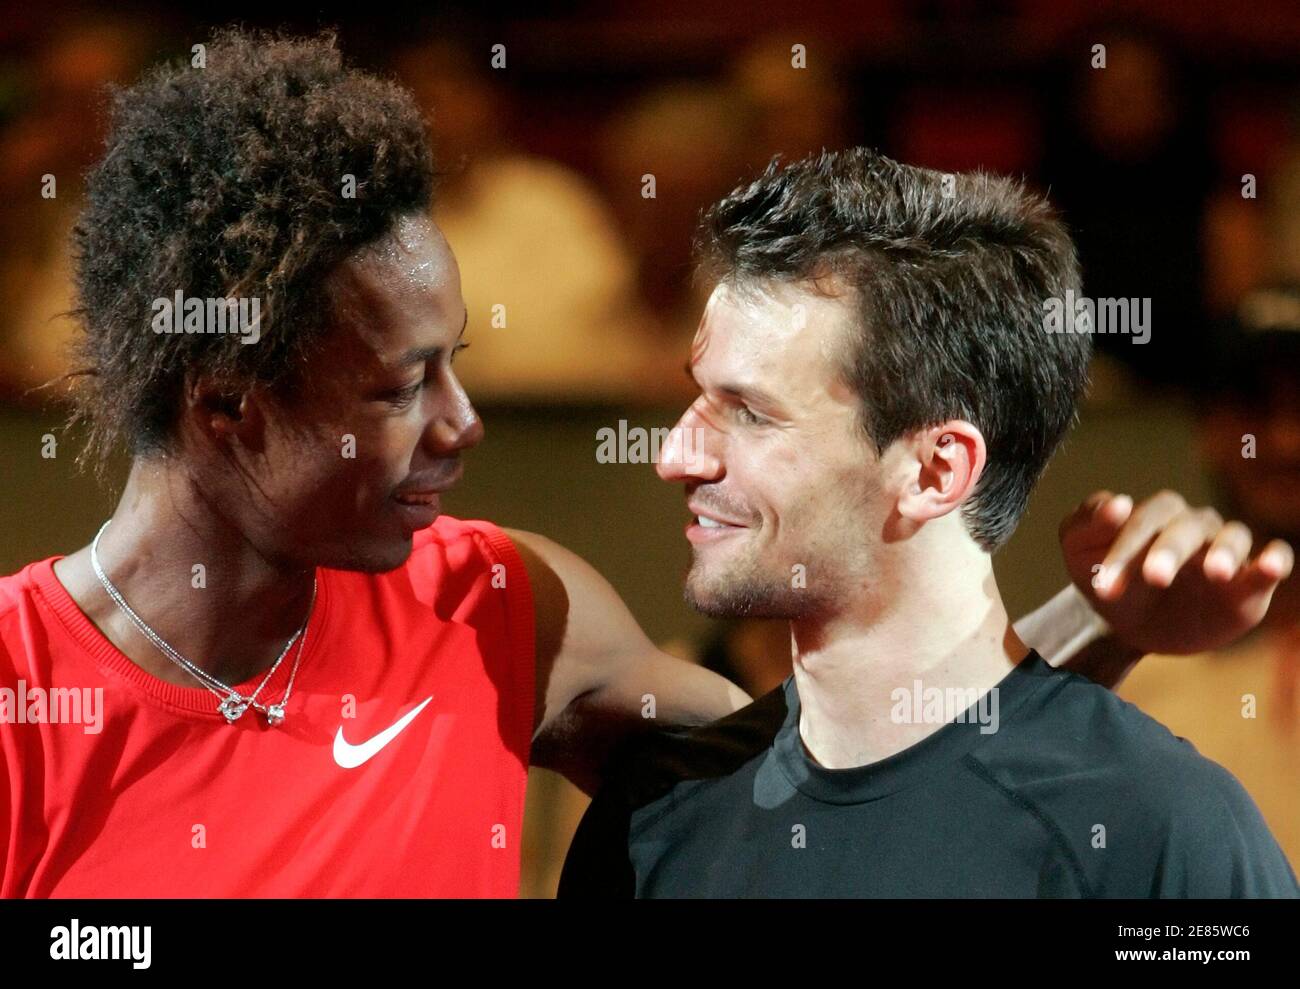 Gael Monfils de Francia (L) felicita a Philipp Petzschner de Alemania después de la derrota de Monfils en su partido de tenis final del Abierto de Viena en Viena el 12 de octubre de 2008. REUTERS/Herwig Prammer (AUSTRIA) Foto de stock